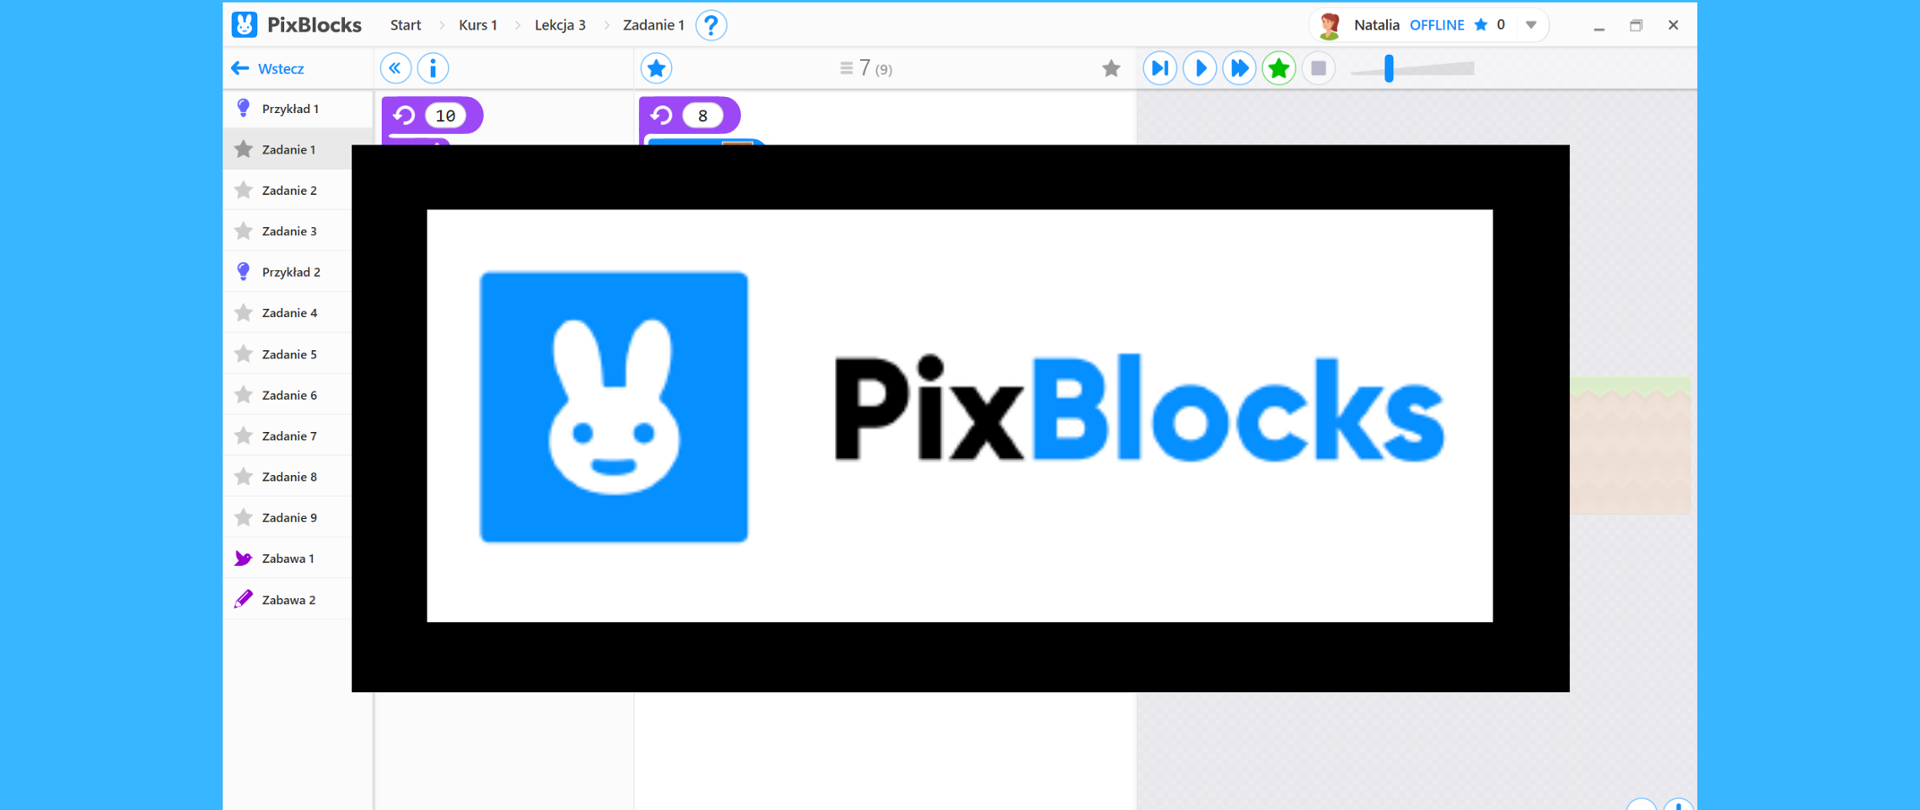 Grafika ma kolor niebieski. Na środku widnieje screen z aplikacji PixBlocks. Na środku tła widnieje czarna ramka z napisem na białym tle: "PixBlocks" i emotikona królika na niebieskim tle.